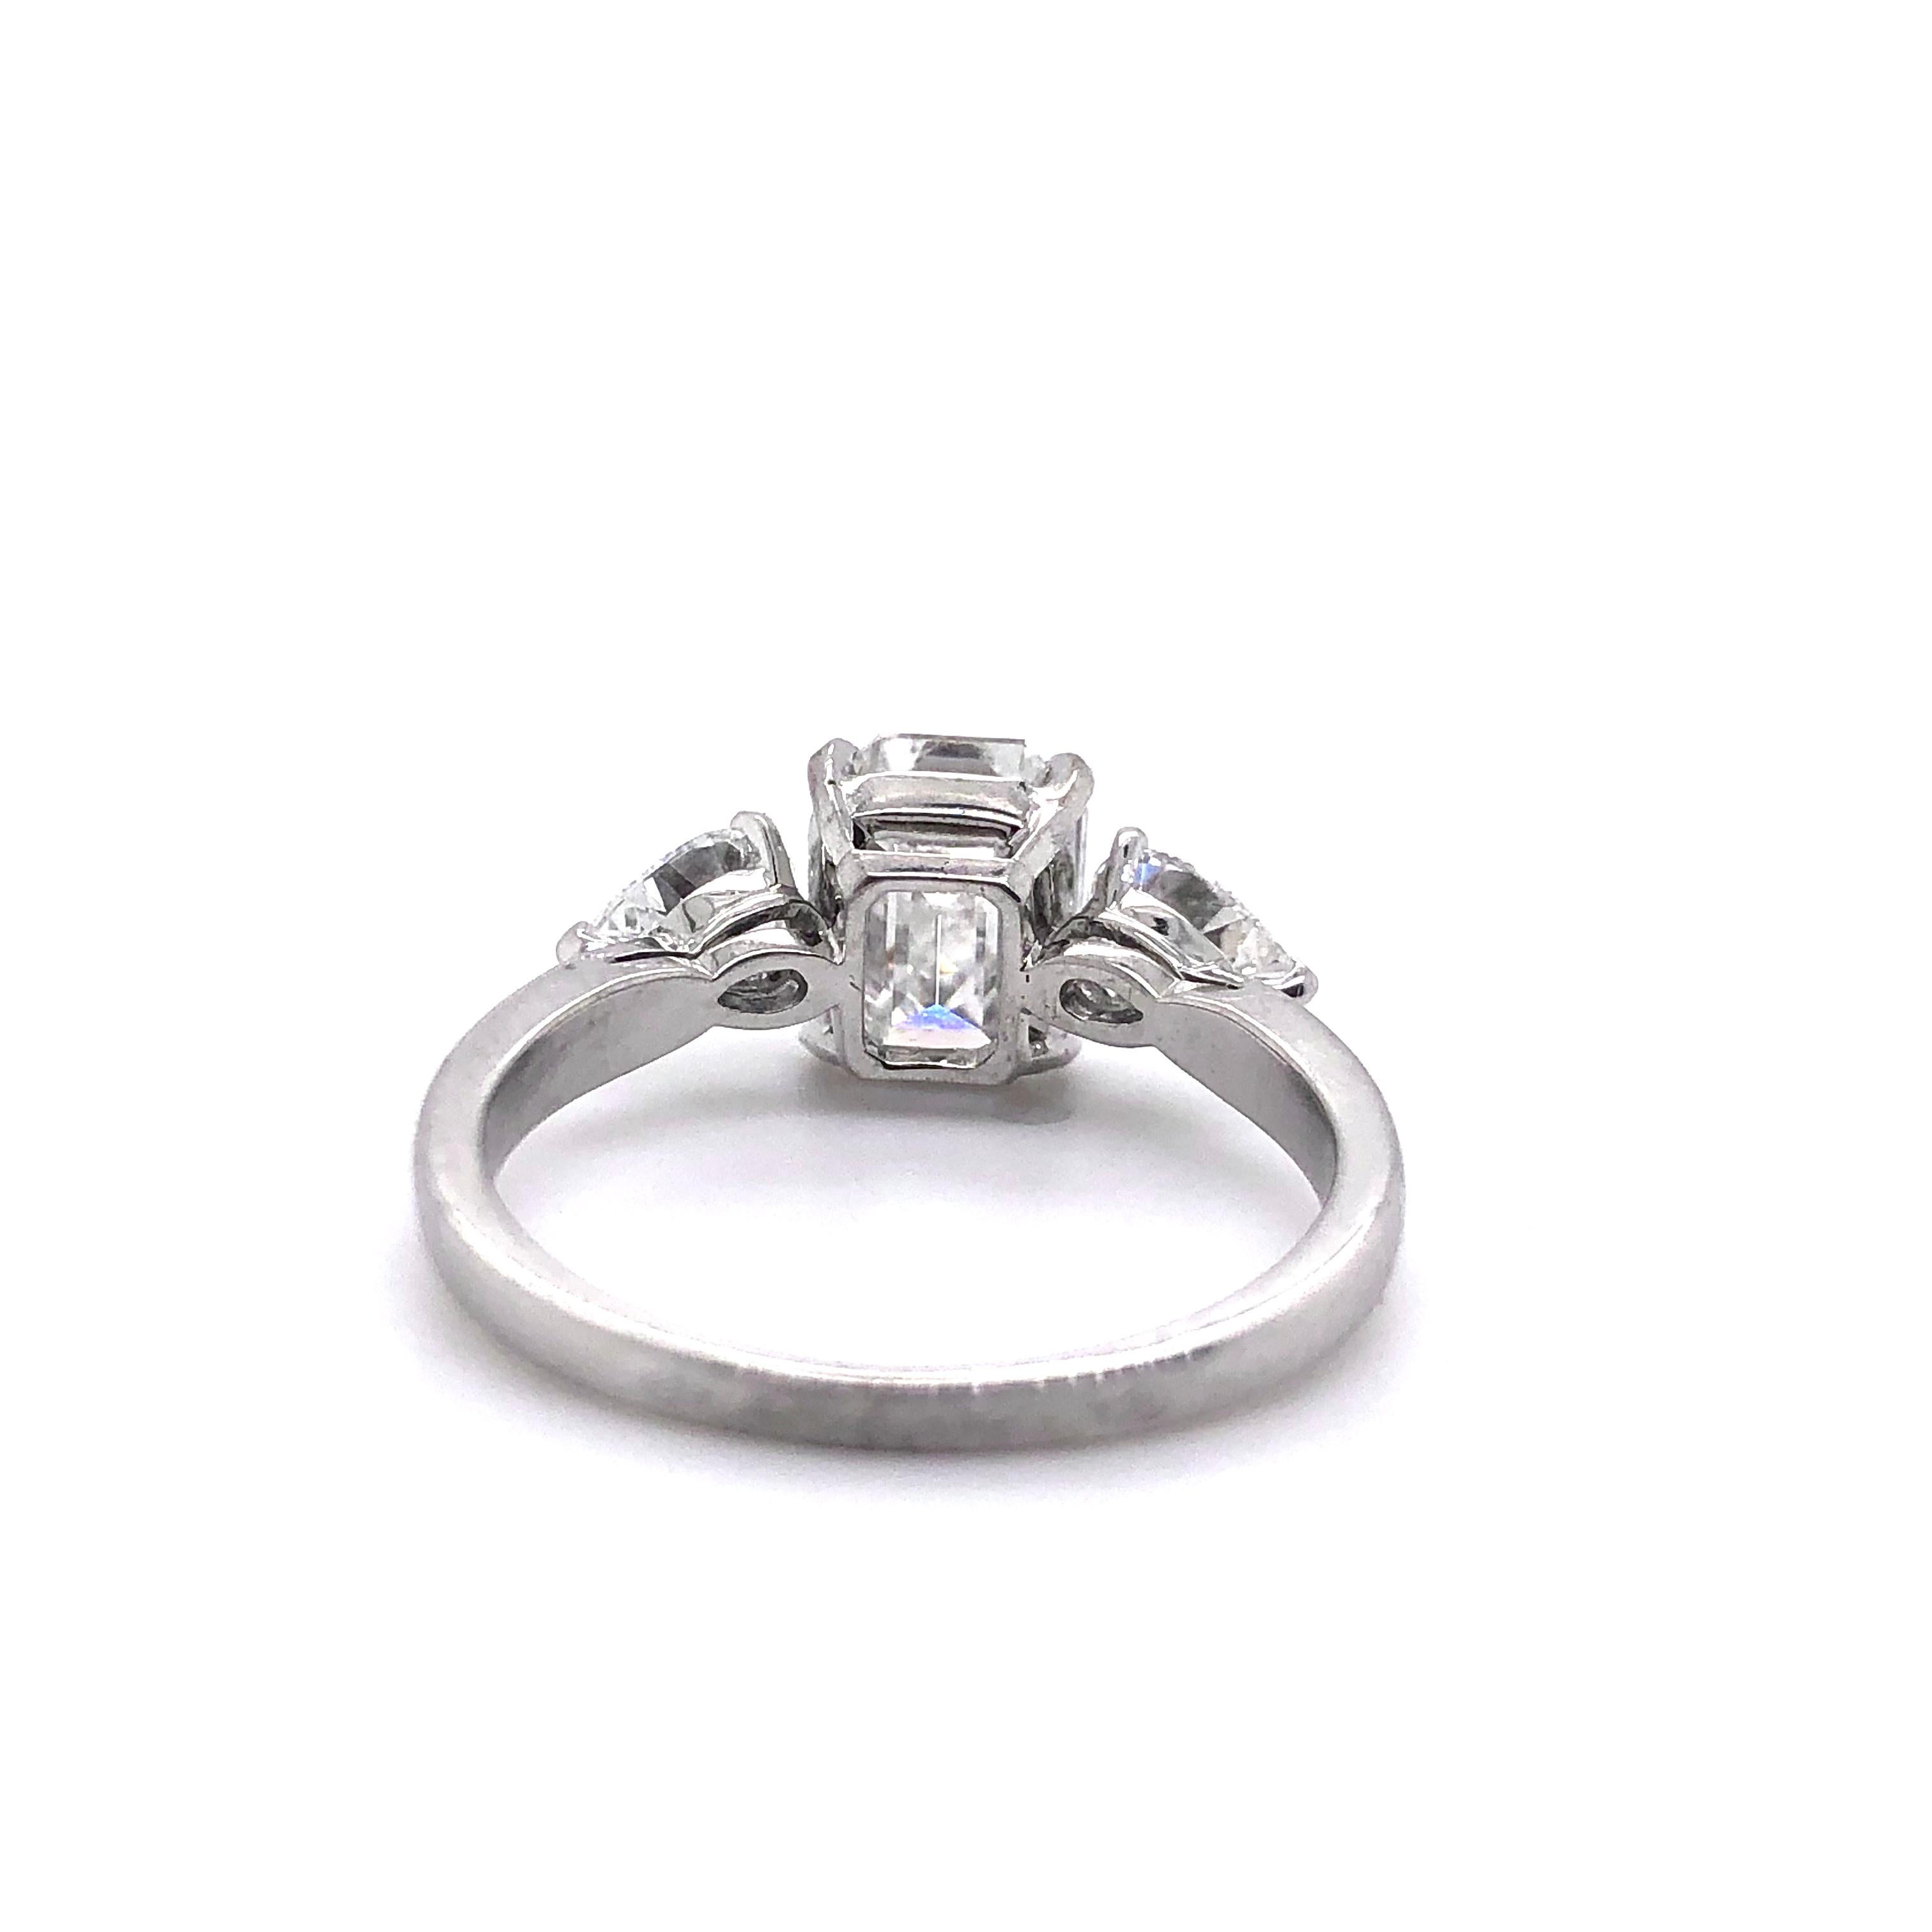 Women's 1.91 Carat E VVS2 GIA Certified Emerald Cut Diamond Ring